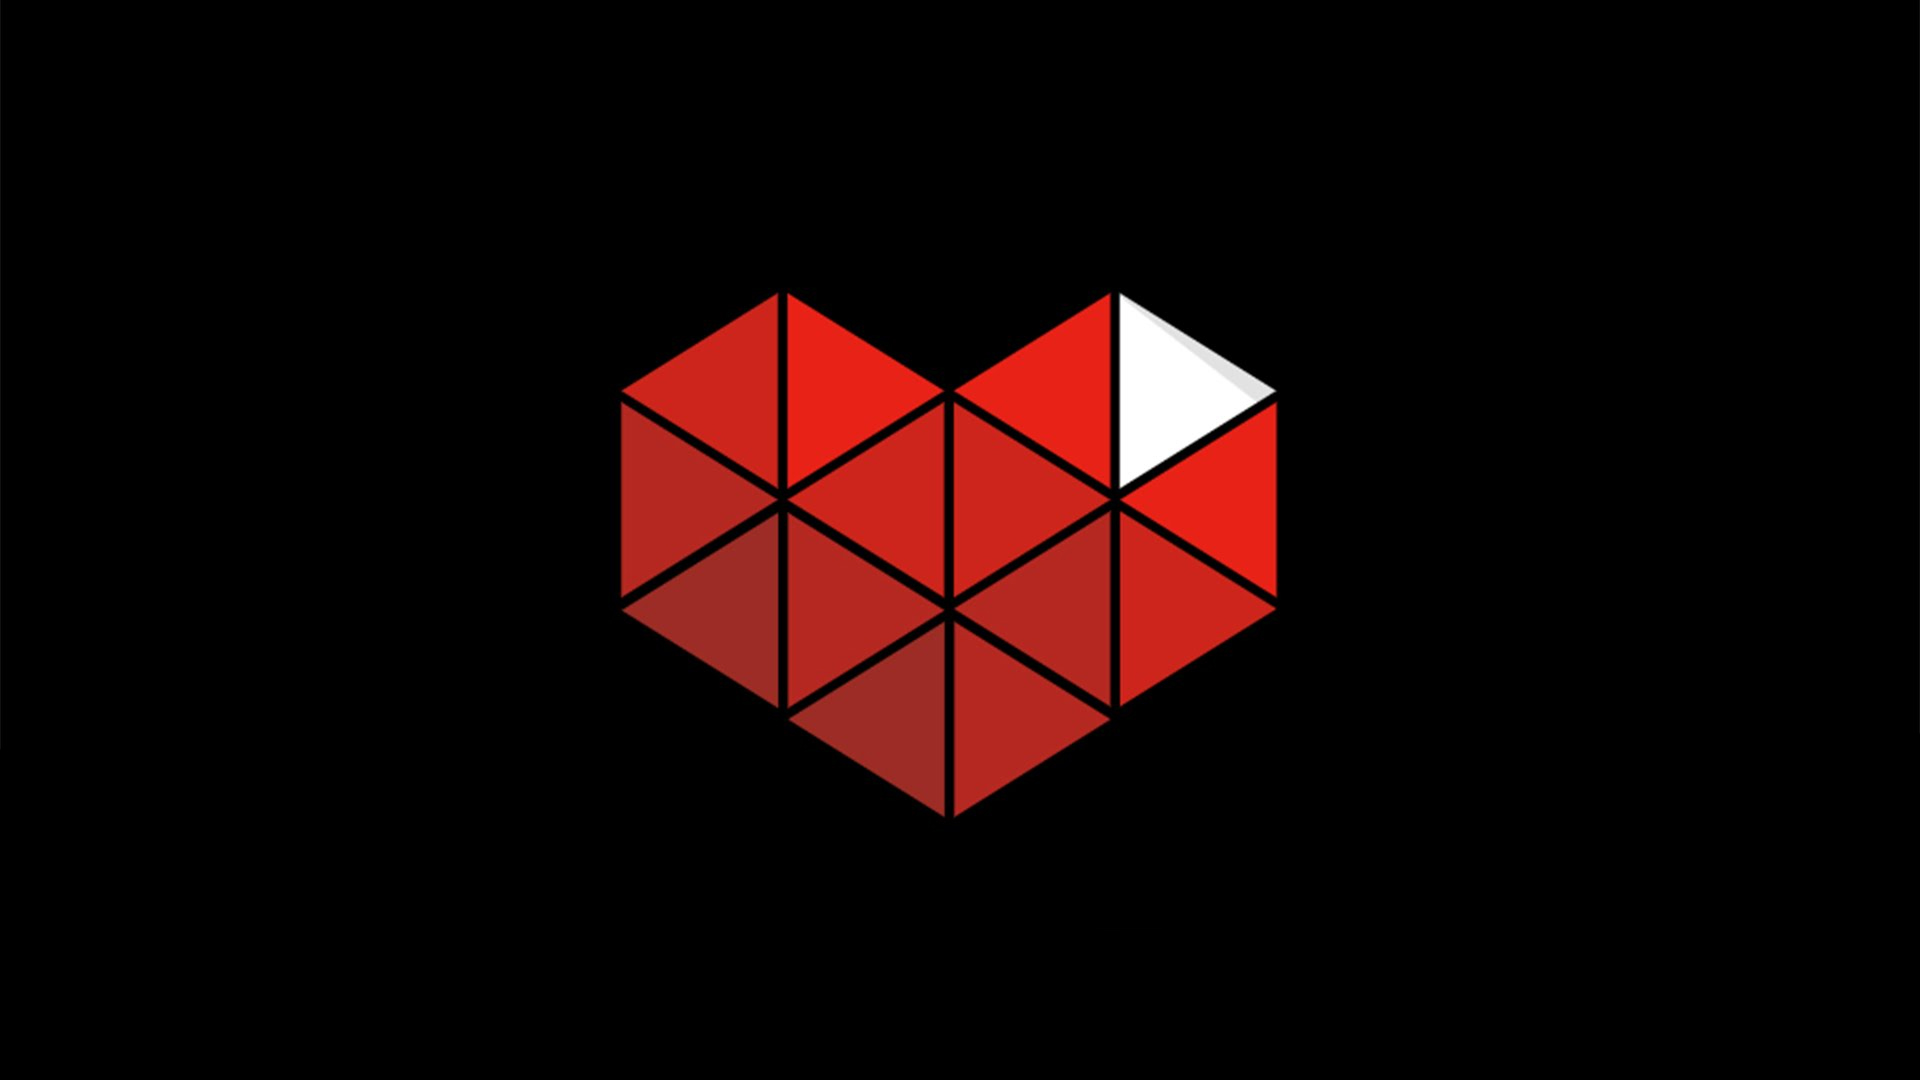 youtube gaming wallpaper,rojo,simetría,modelo,diseño,gráficos